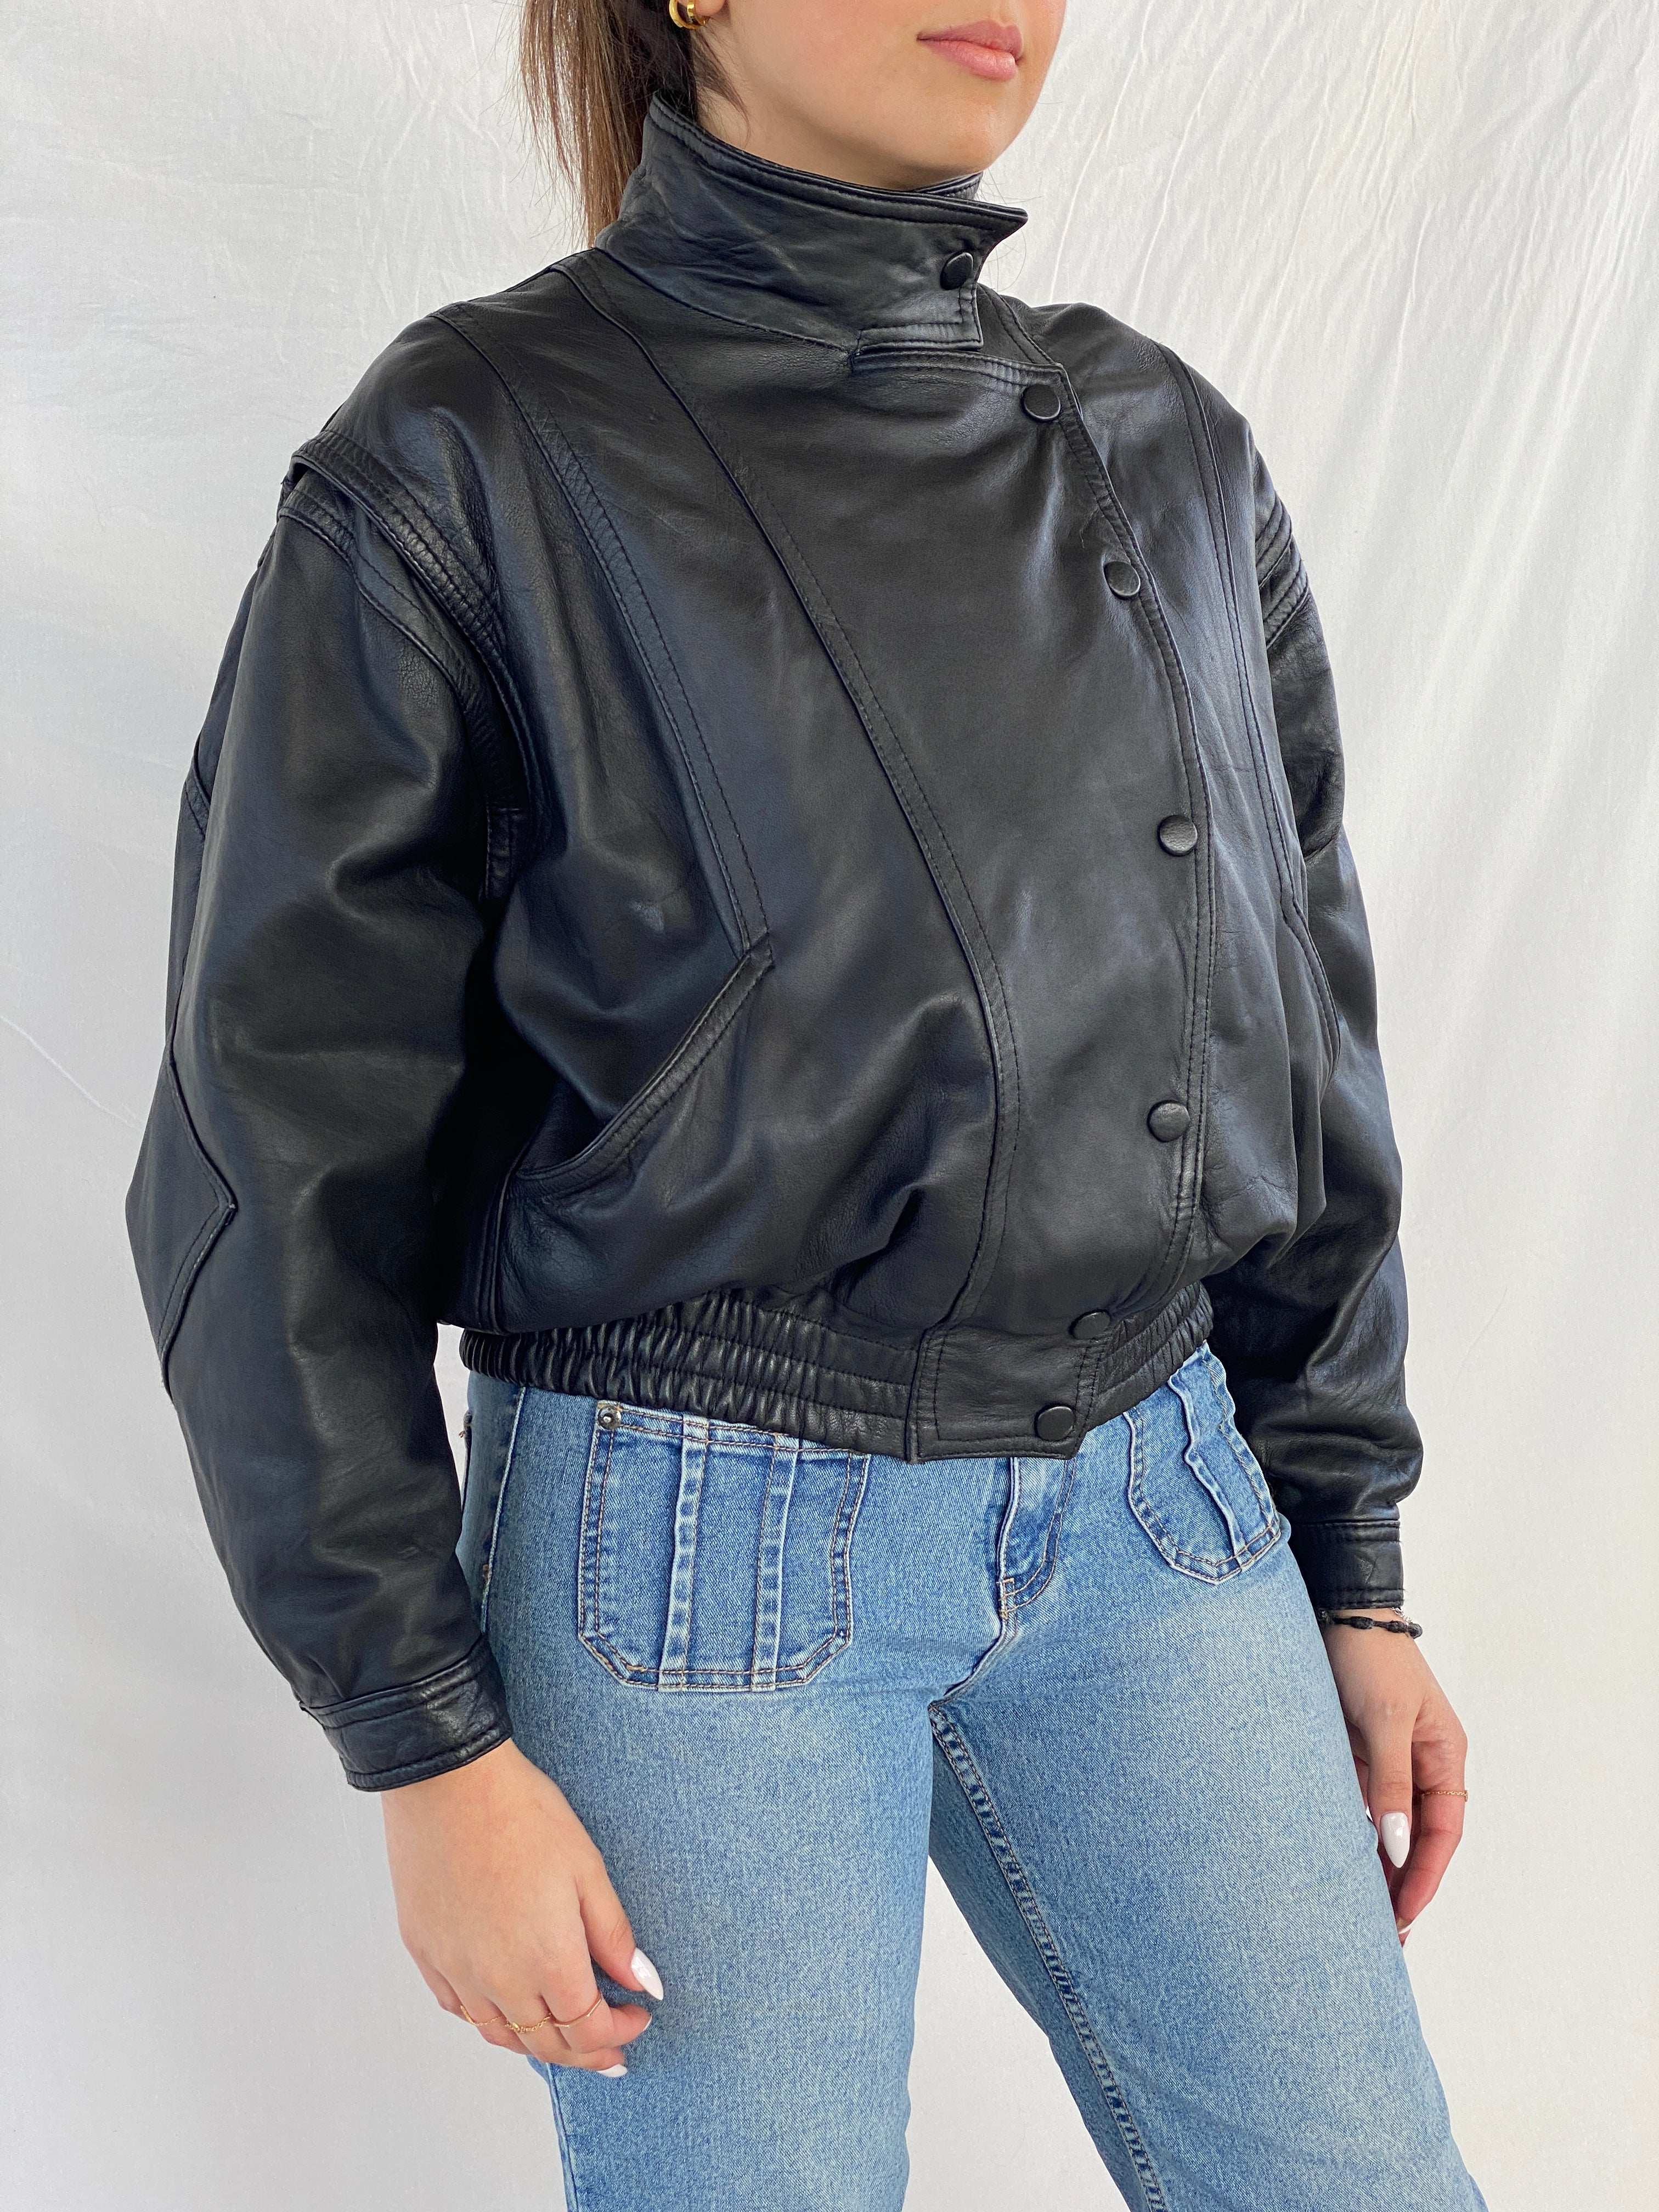 Vintage Bomber Style Genuine Leather Jacket - Balagan Vintage Leather Jacket 80s, 90s, genuine leather, genuine leather jacket, Juana, NEW IN